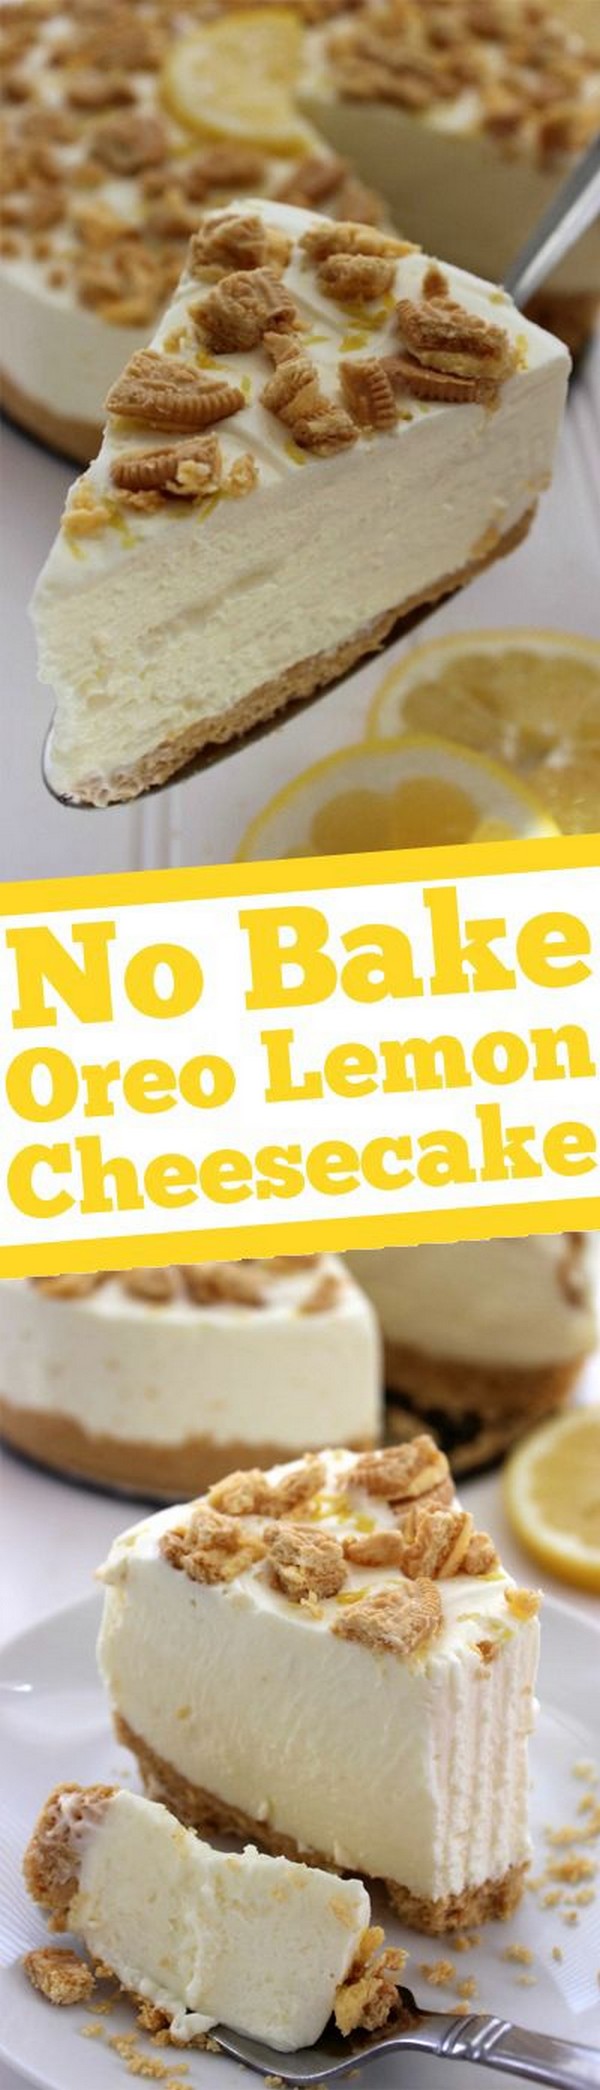 No-Bake Oreo Lemon Cheesecake